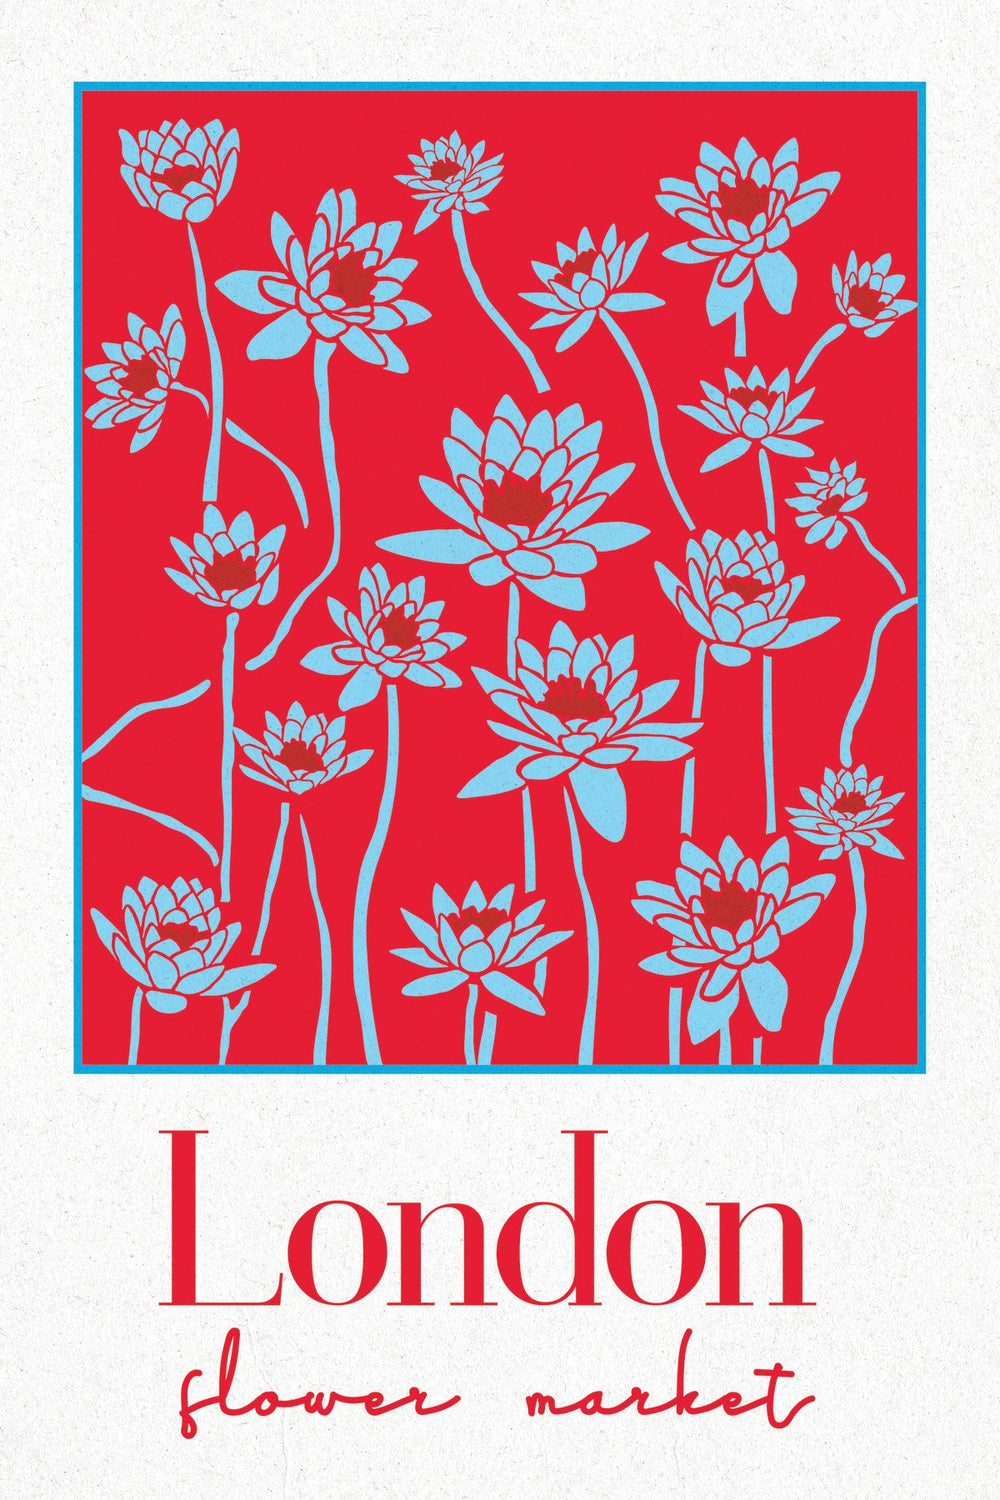 London City Flower Market Poster